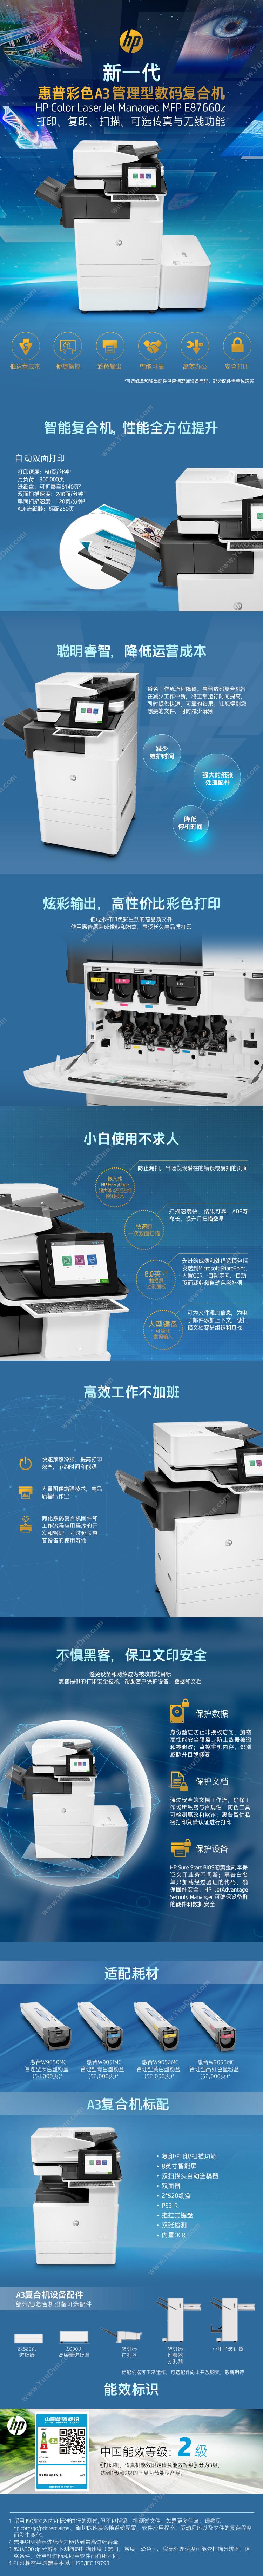 惠普 HP A3X3A78AE77822dn 激光复合打印机